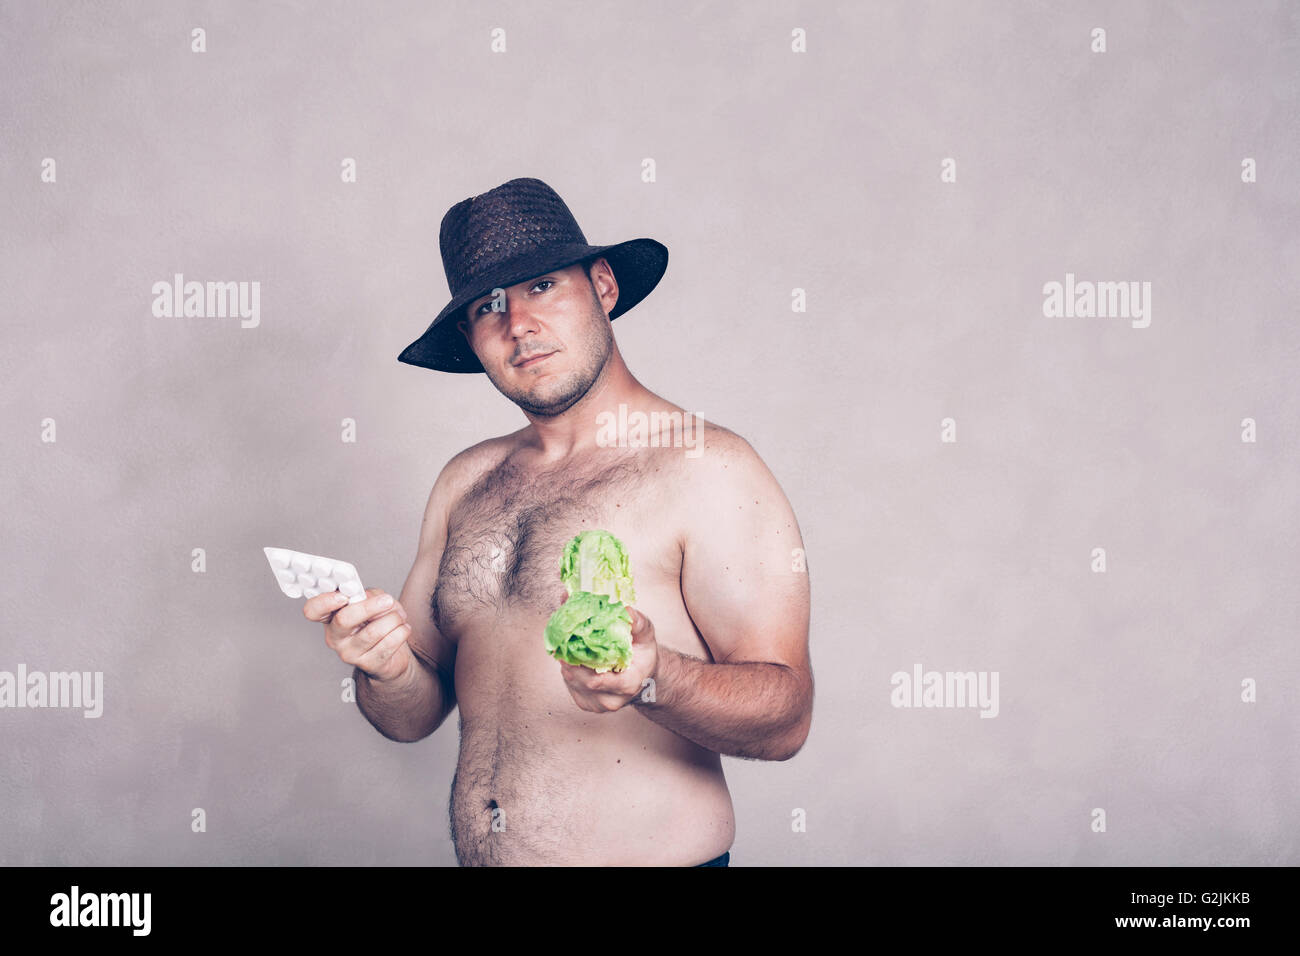 Hombre corpulento desnudo en hat mantiene los productos farmacéuticos y la lechuga. Foto de stock